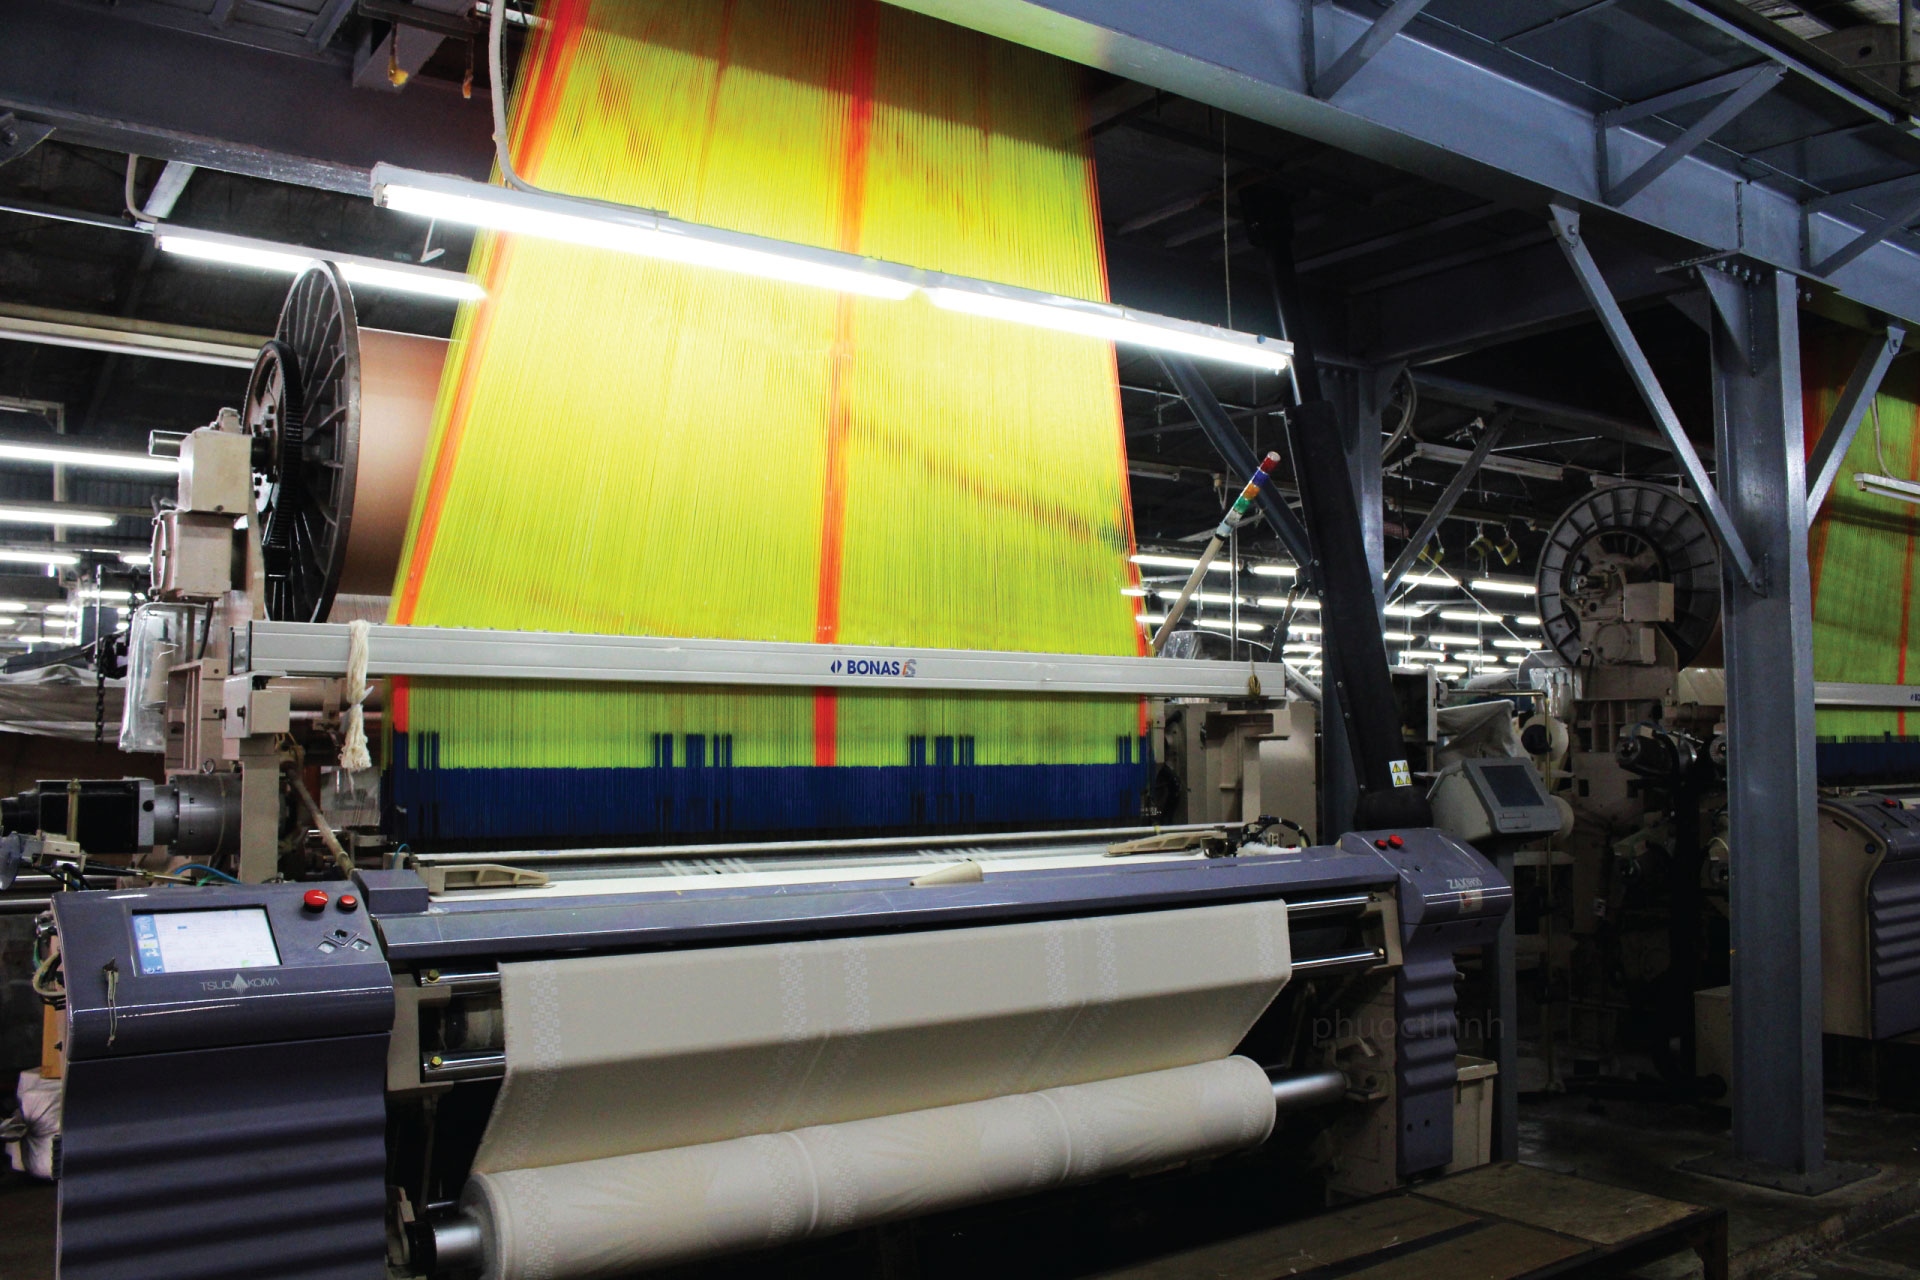 Xưởng sản xuất - Dệt Nhuộm Vải Phước Thịnh - Công Ty Cổ Phần Đầu Tư Dệt Phước Thịnh